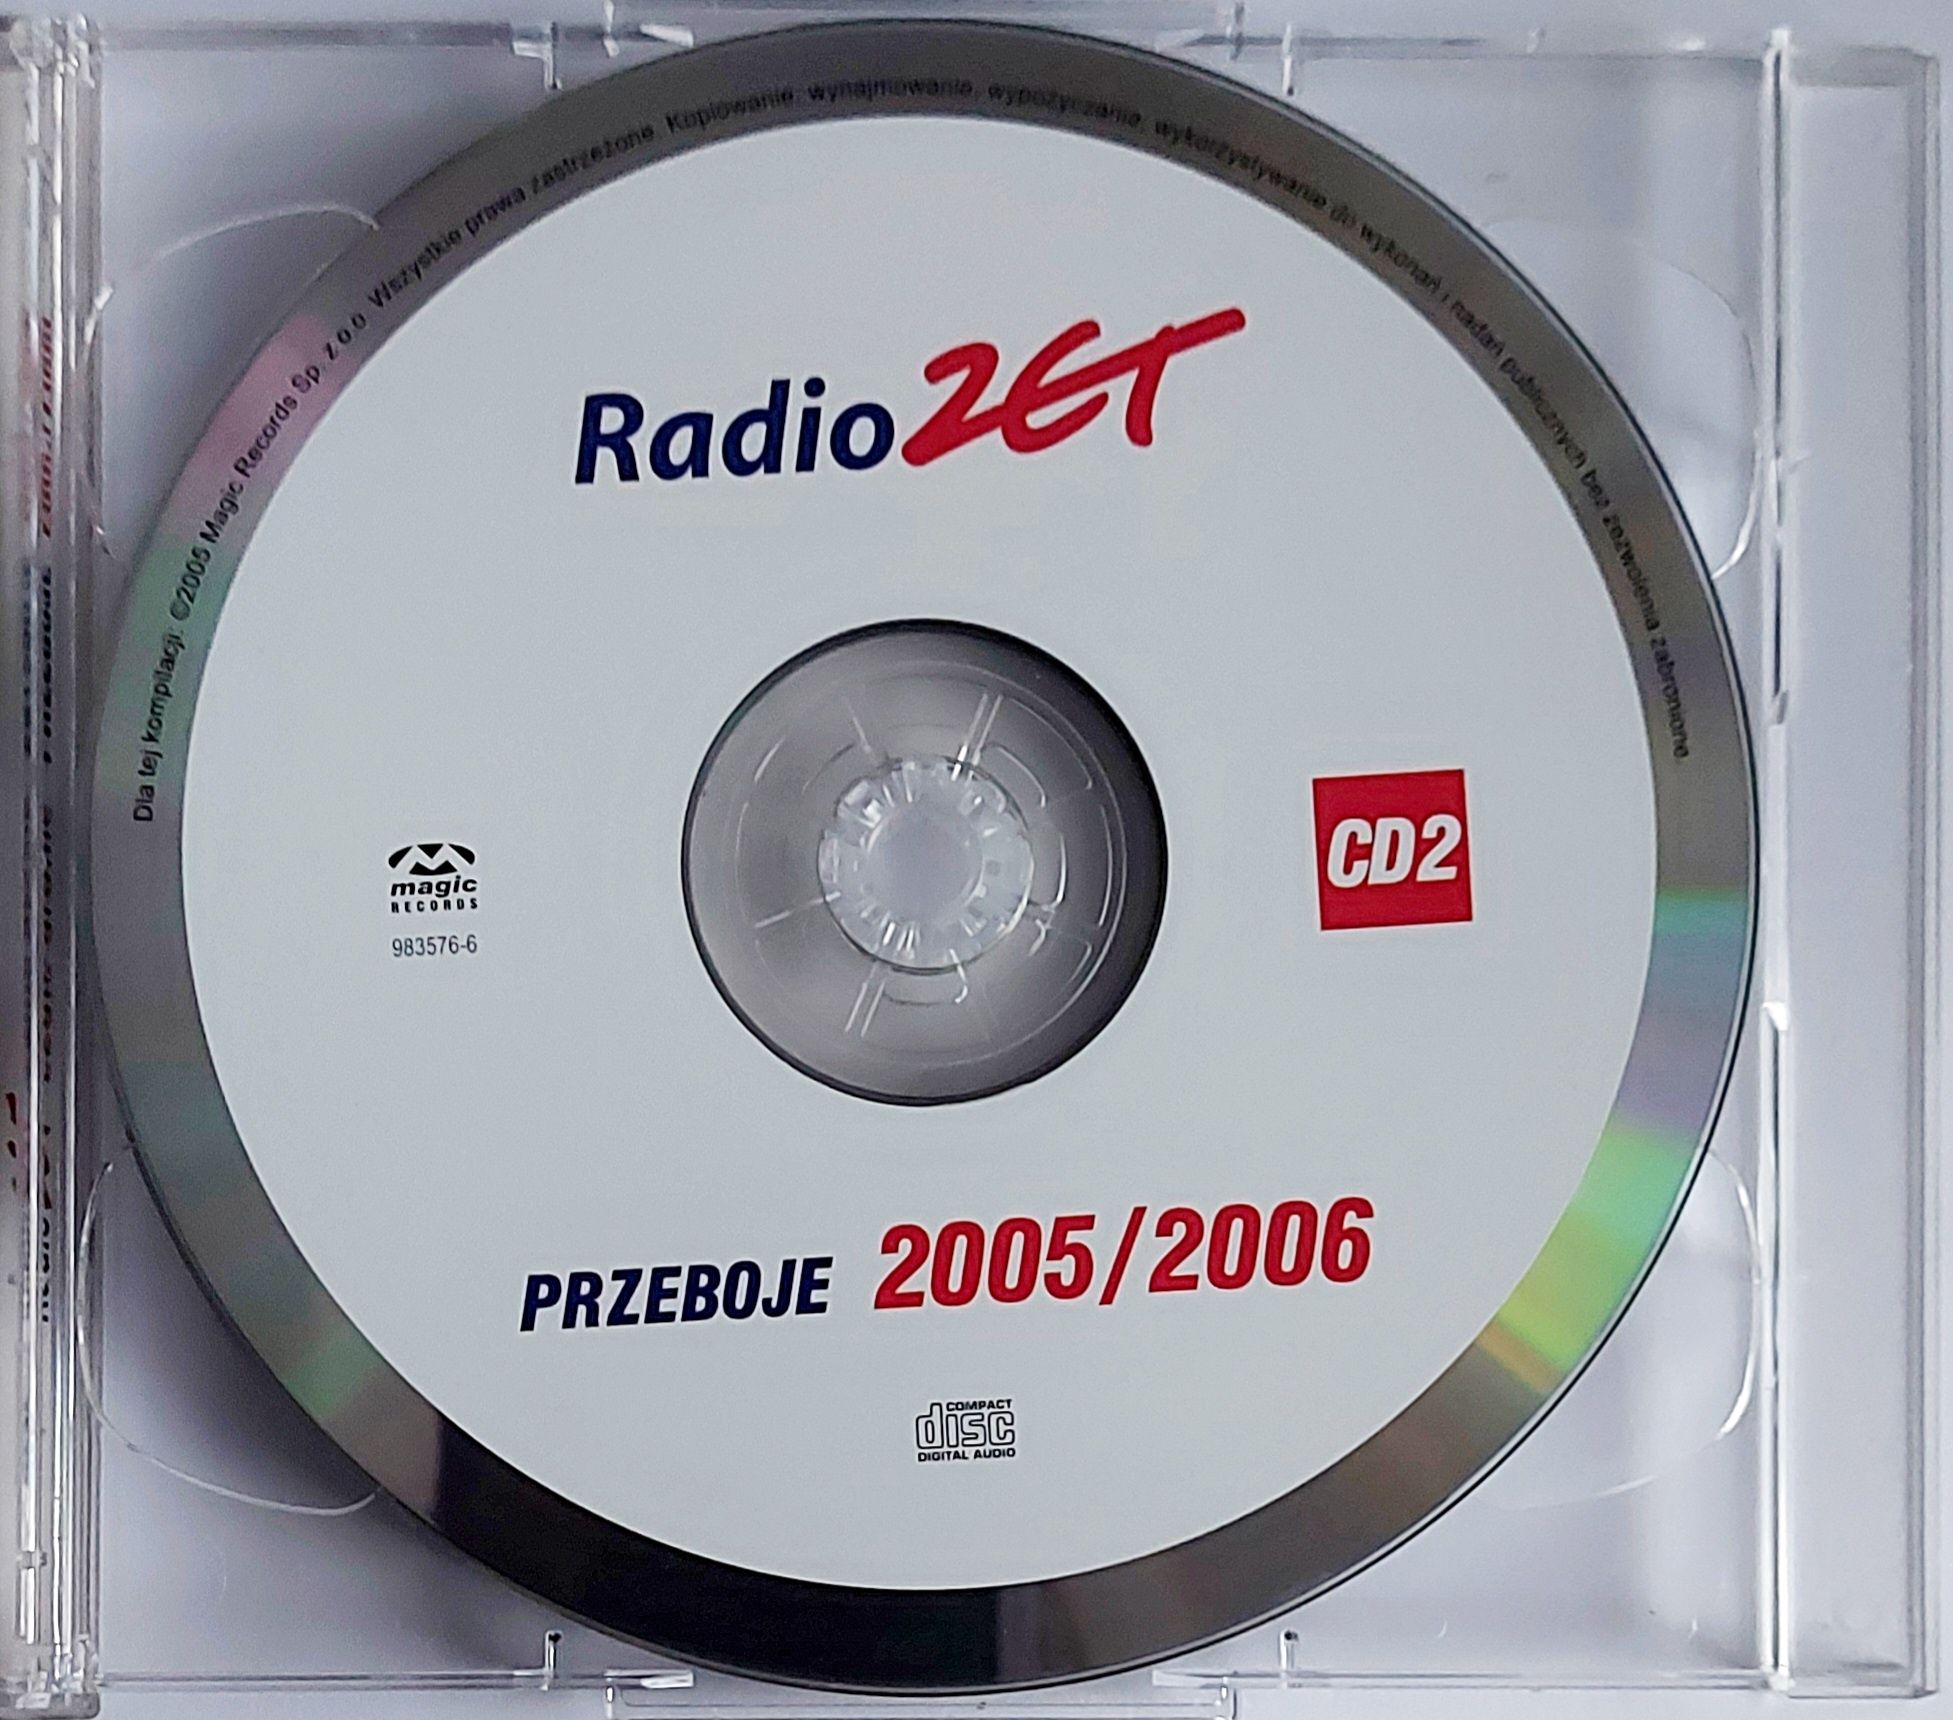 Radio Zet Przeboje 2005/2006 2CD 2005r Urszula Kombii Goya ATB U2